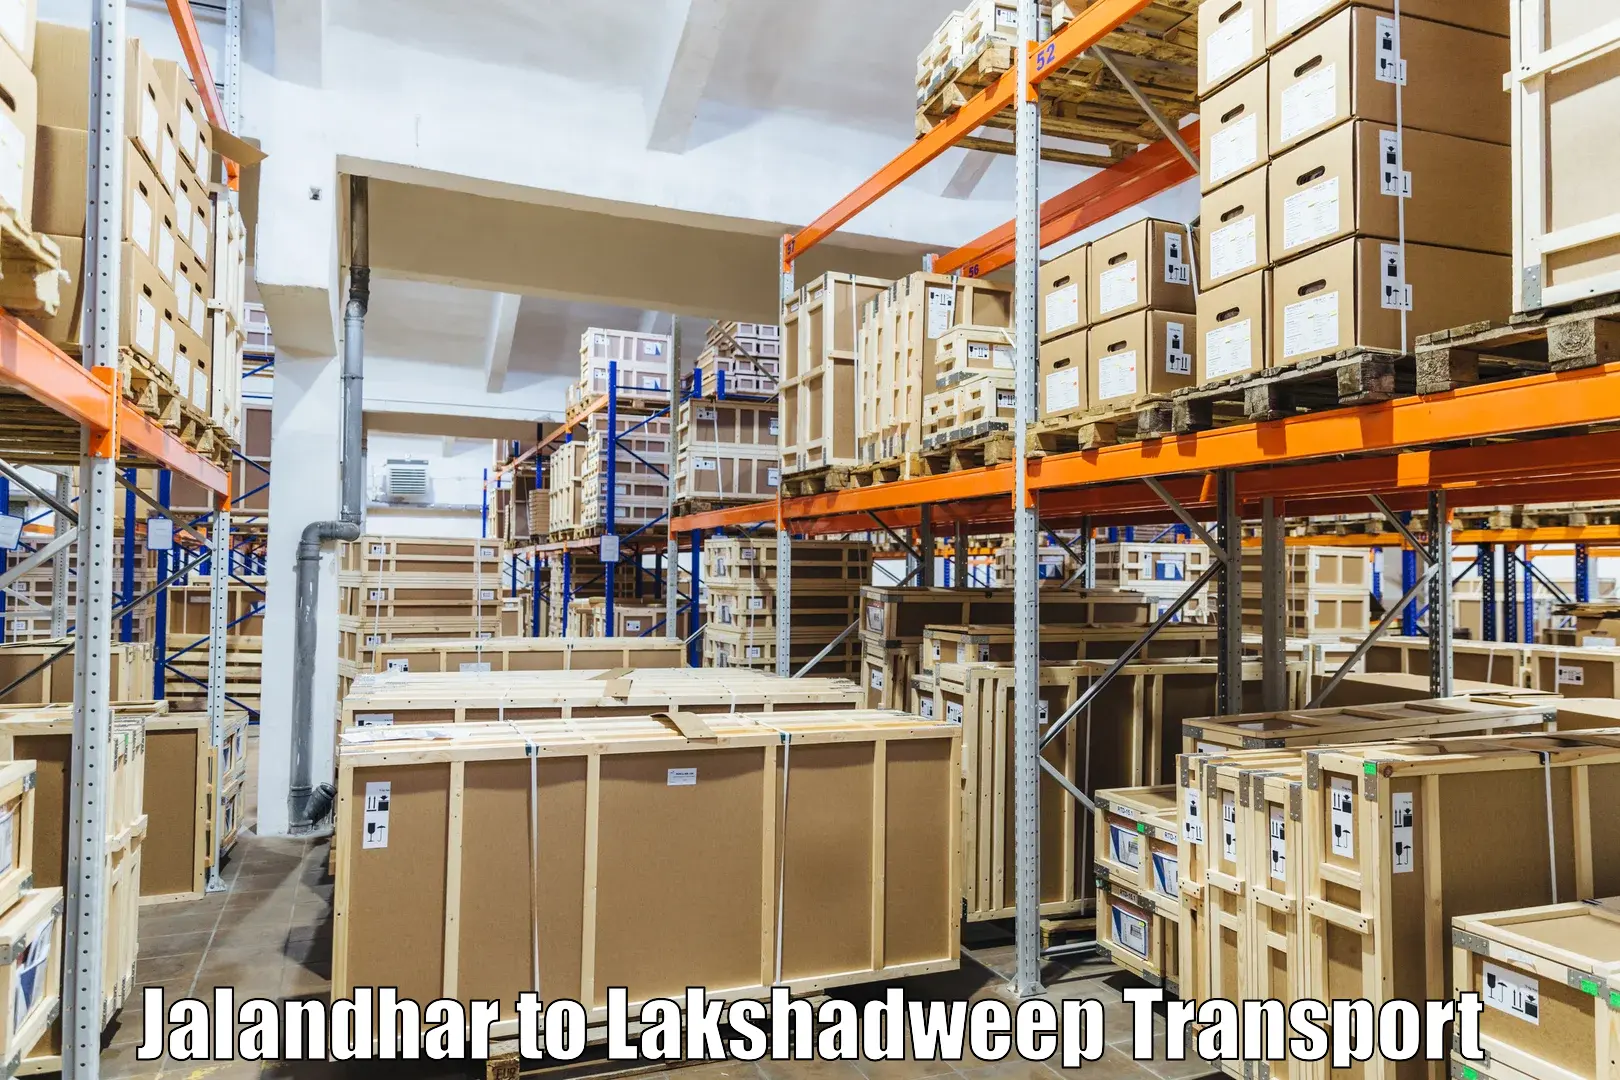 Shipping partner Jalandhar to Lakshadweep